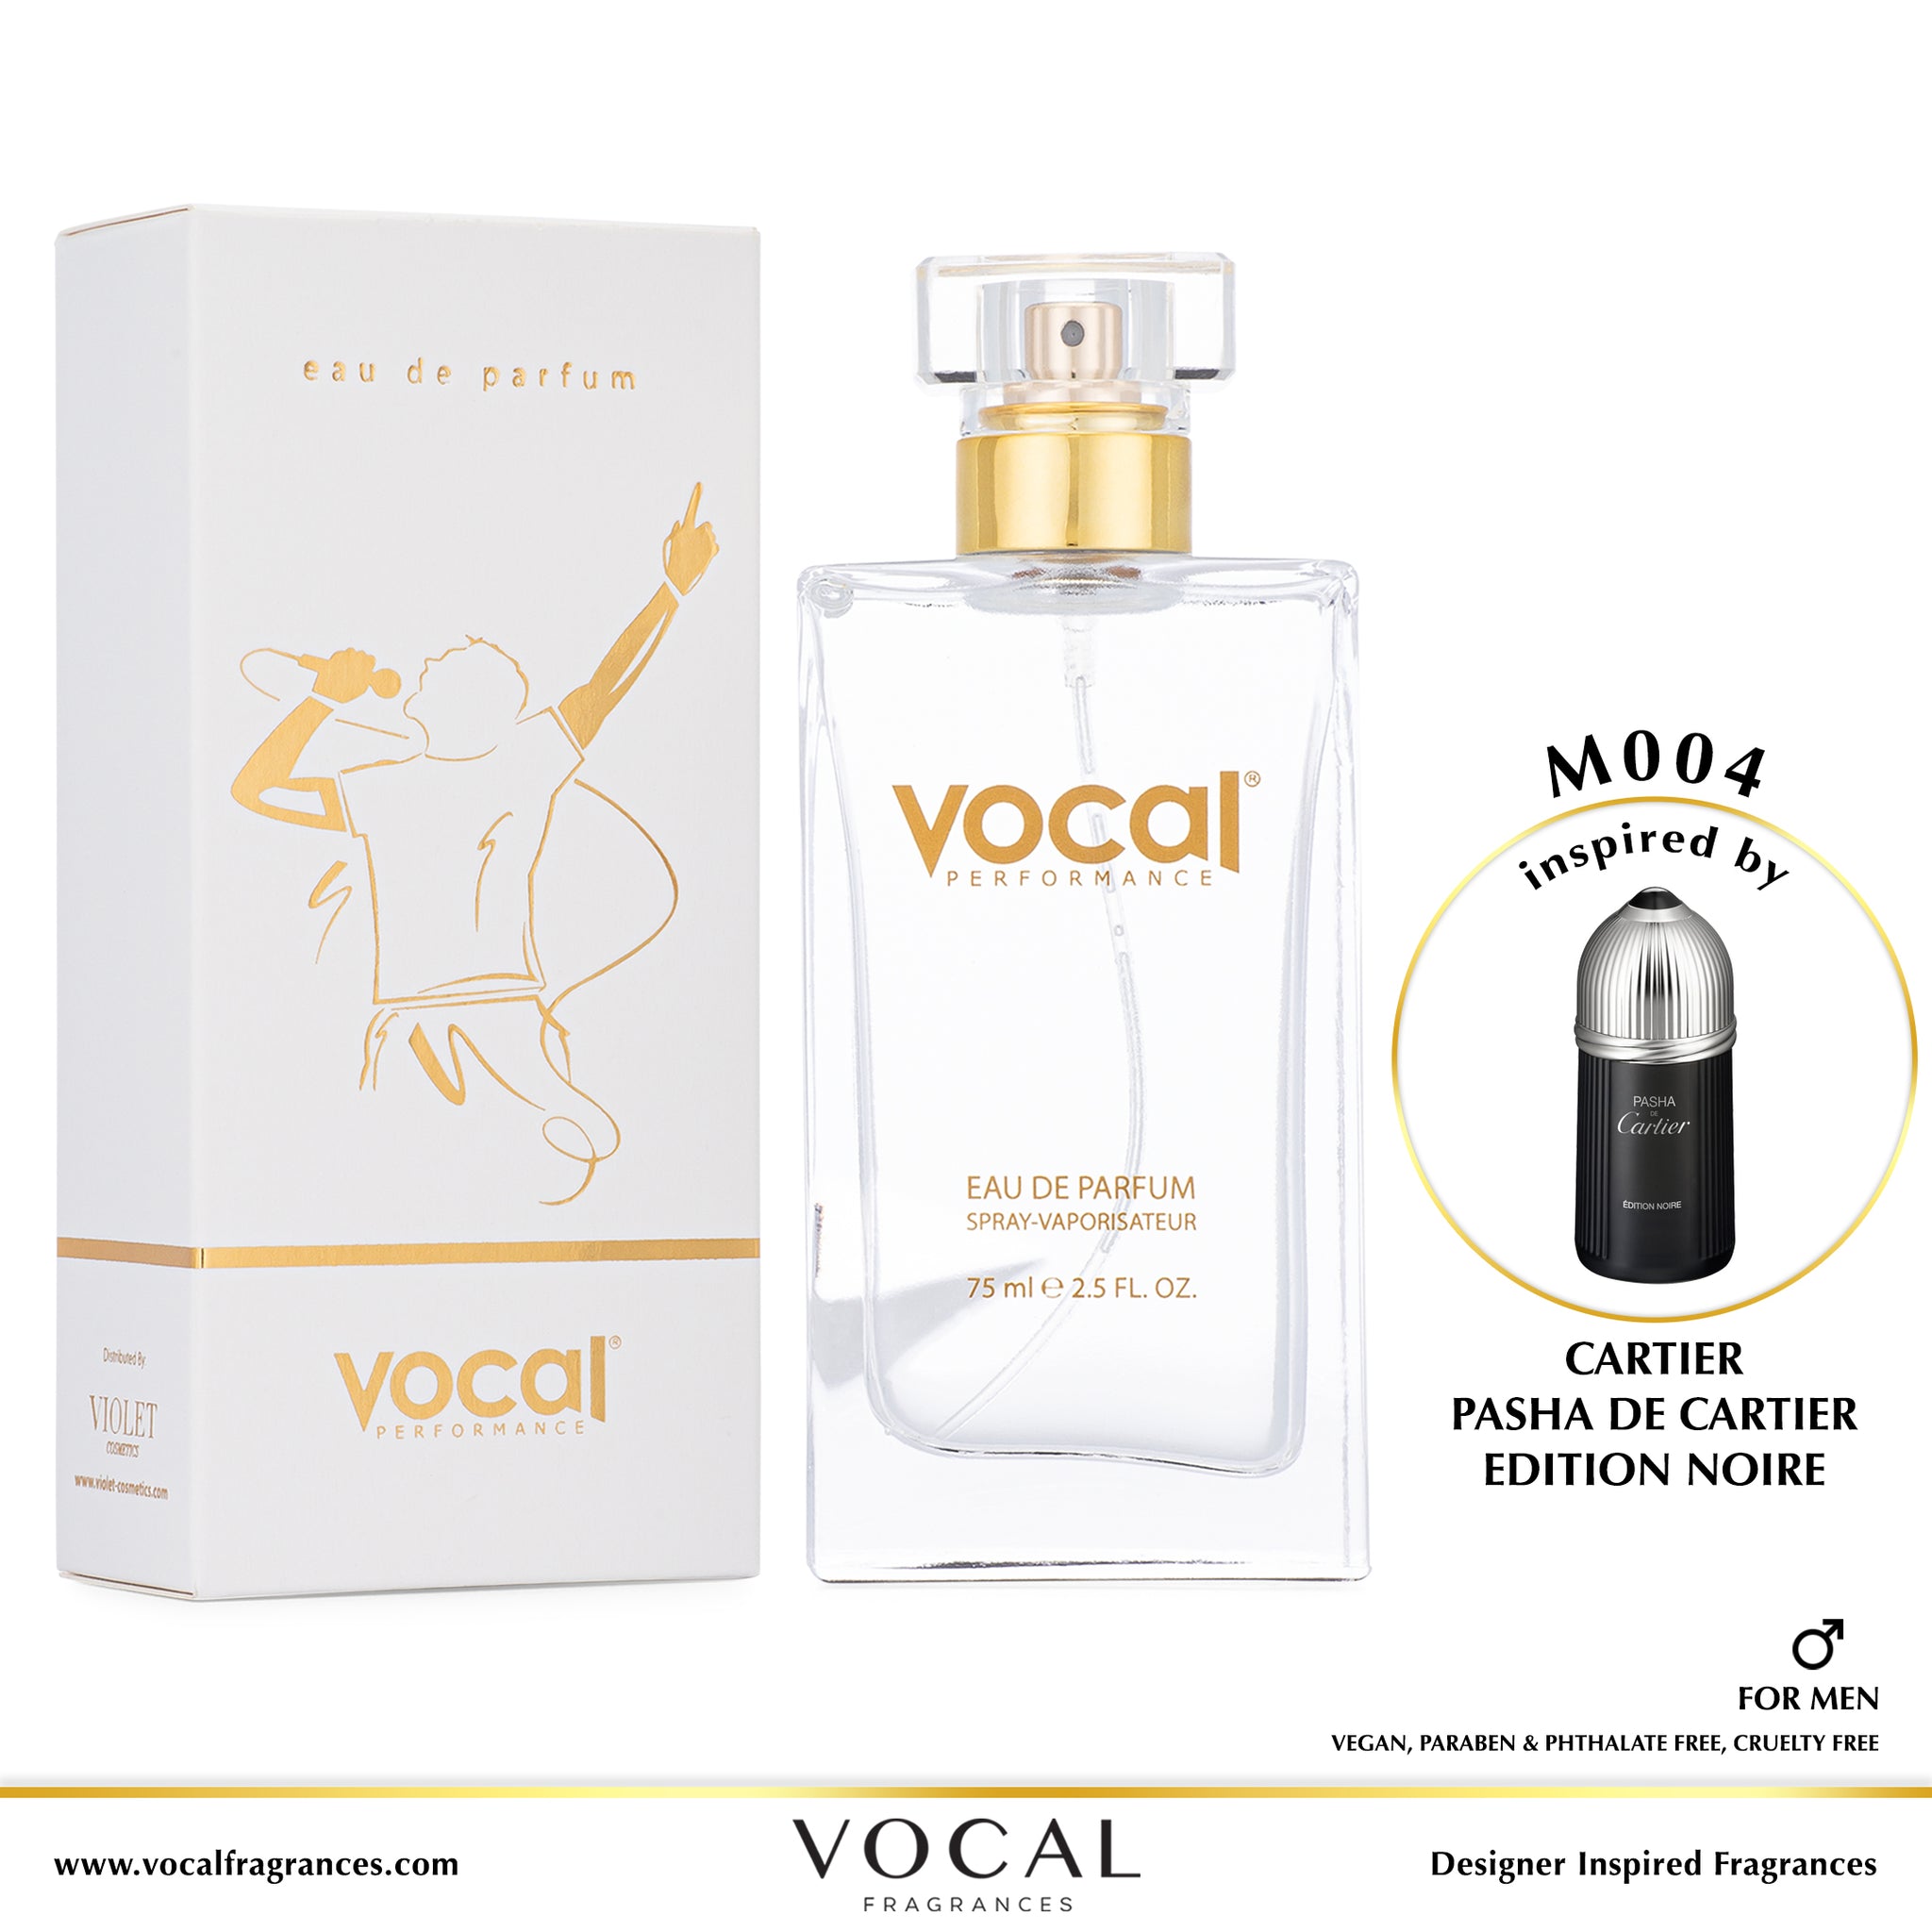 M004 Vocal Performance Eau De Parfum For Men Inspired by Cartier